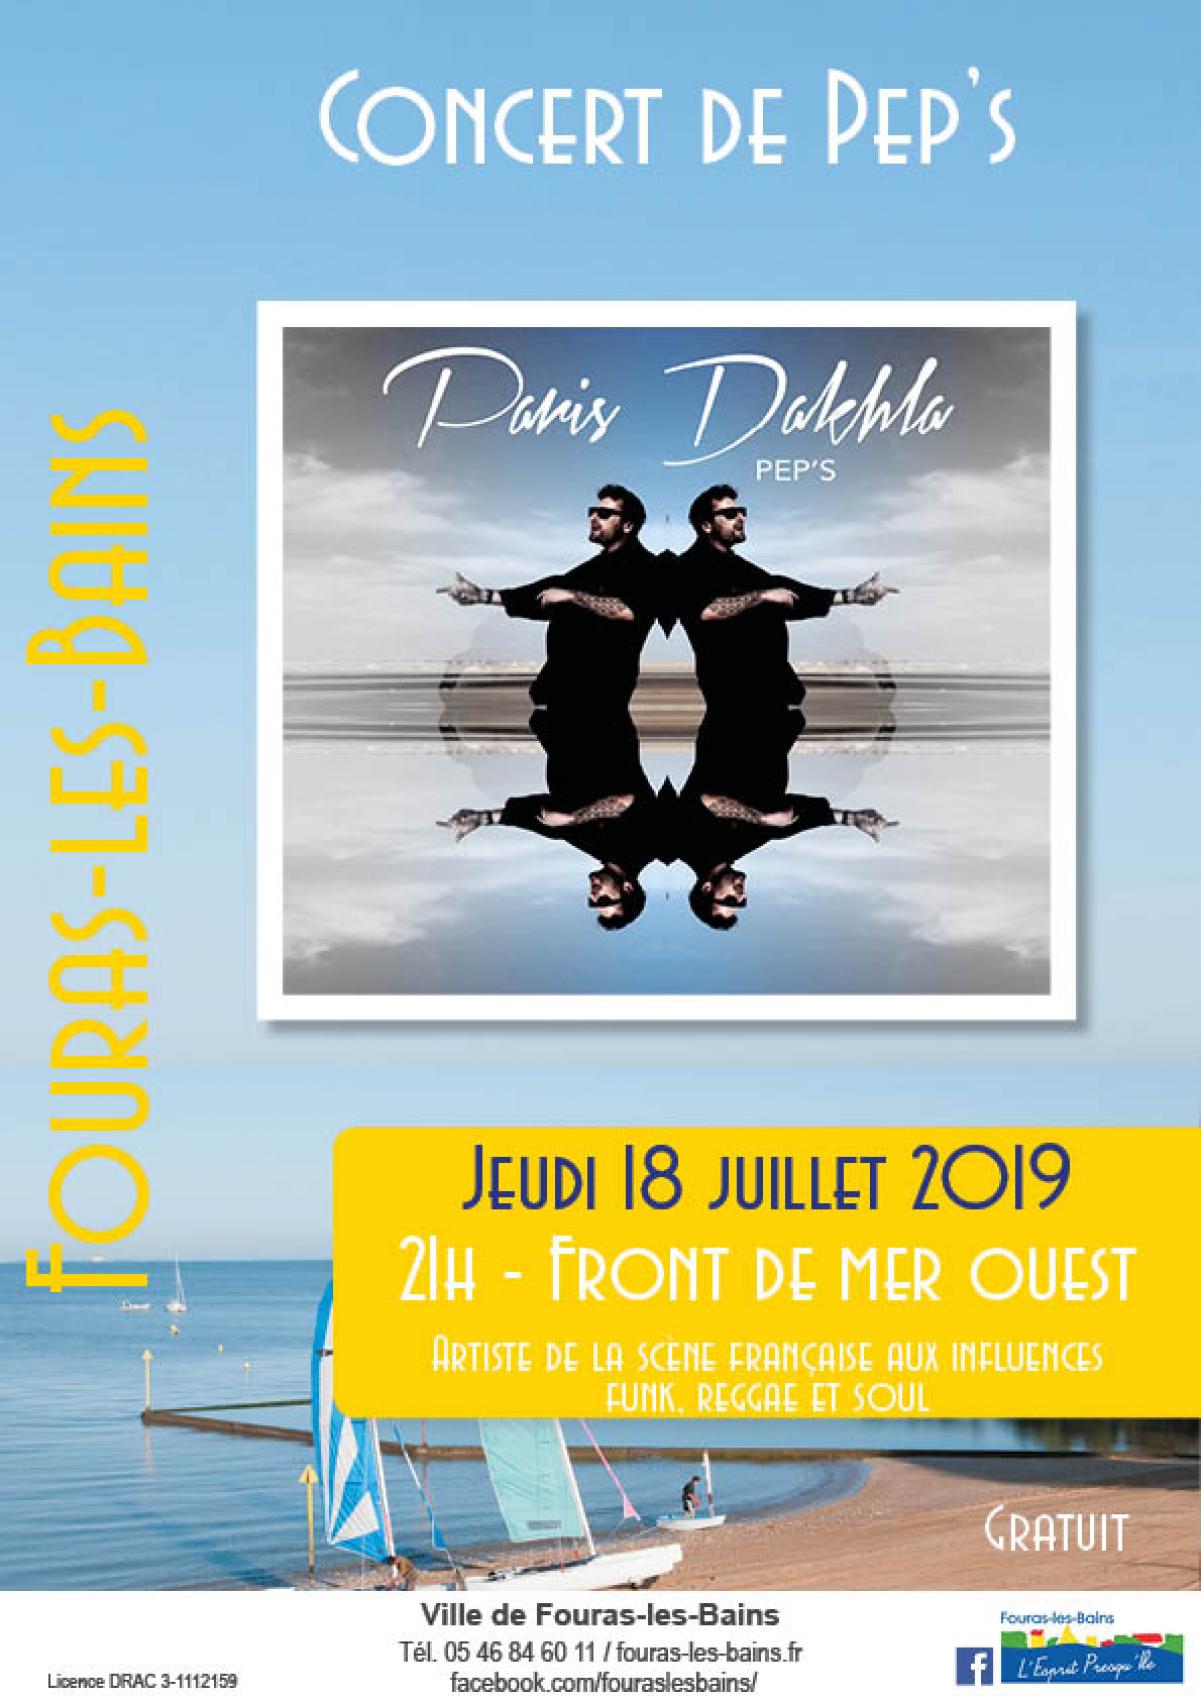 Concert de Pep's - Jeudi 18 juillet 2019 - 21h Front de mer ouest